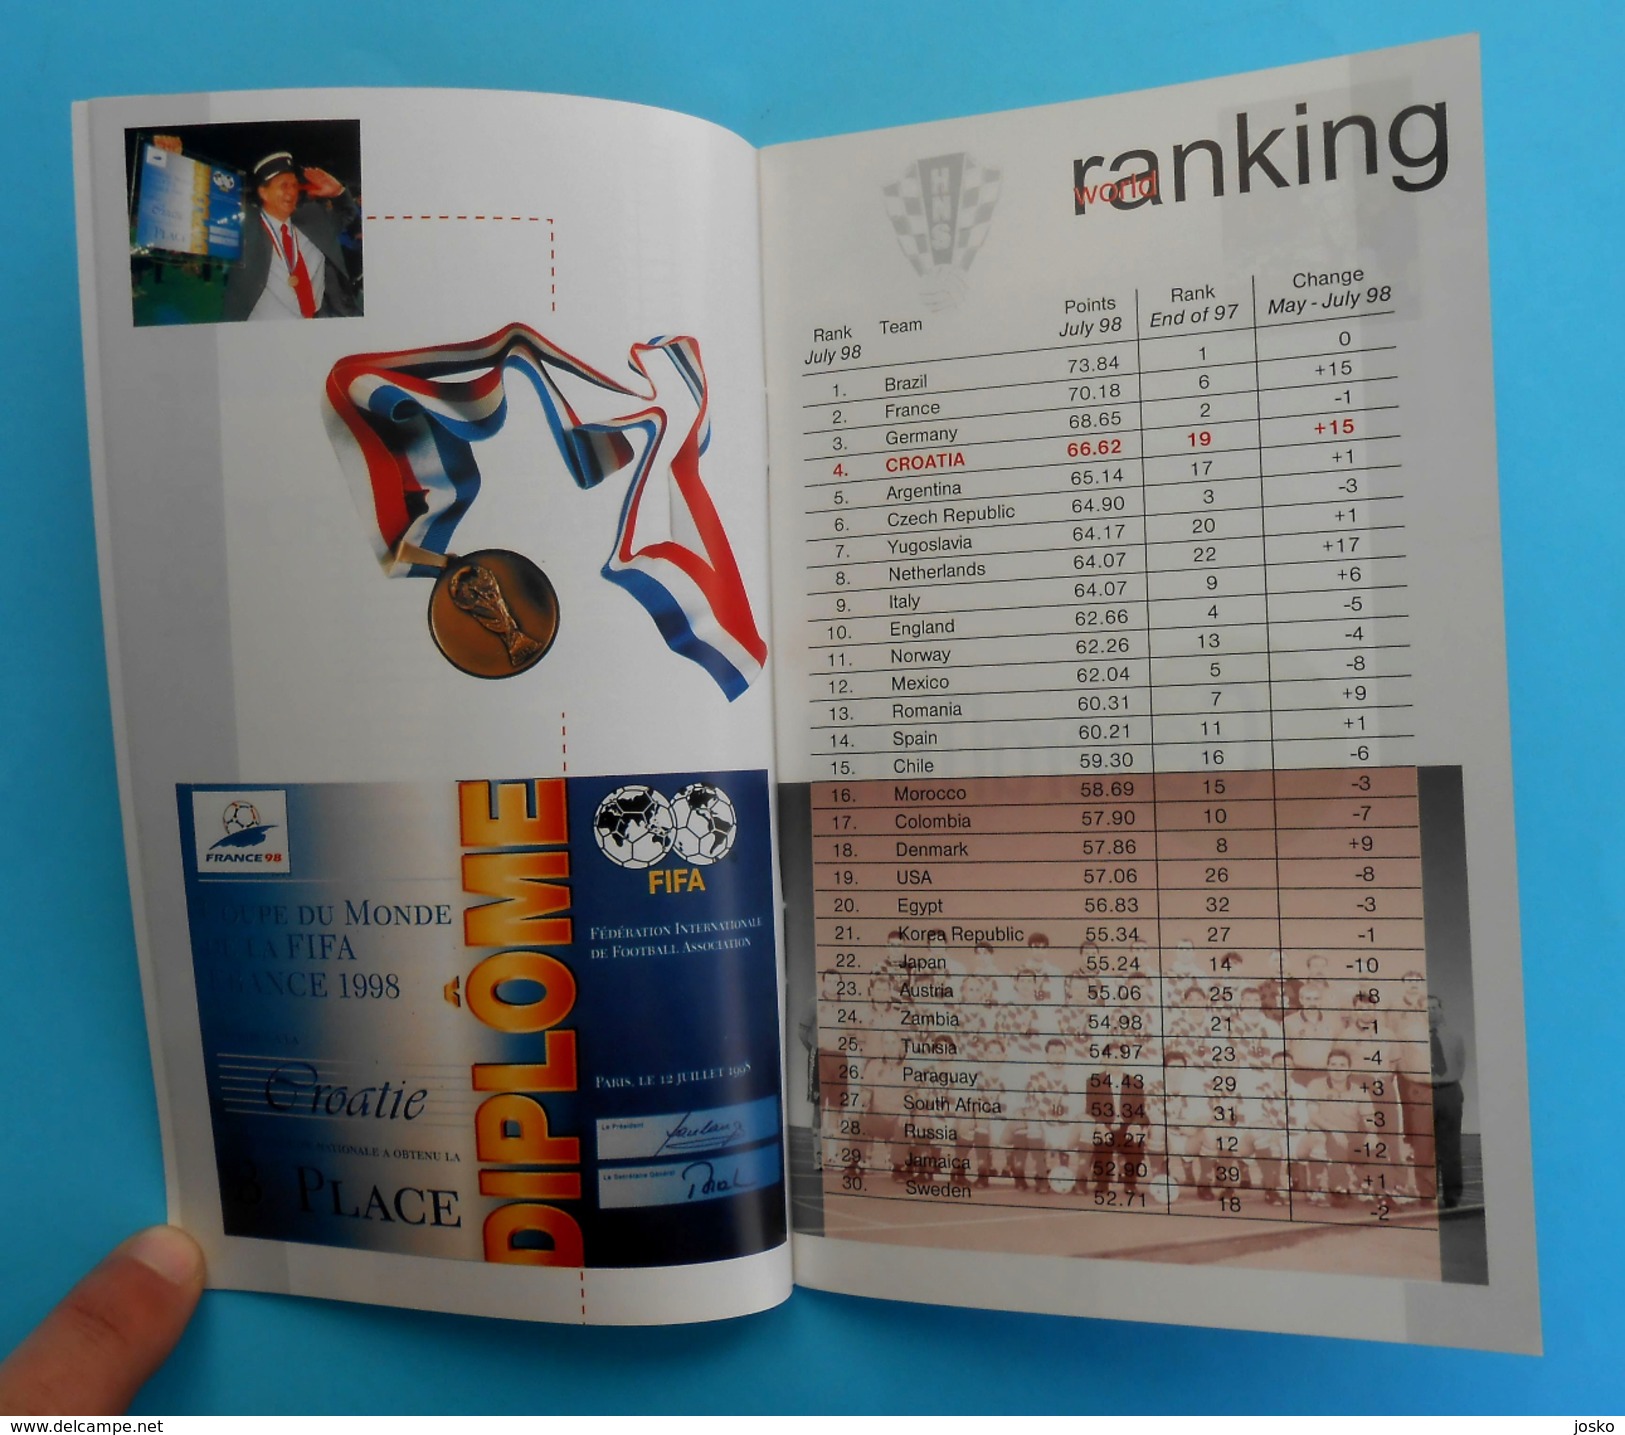 UEFA EURO 2000 - CROATIA TEAM Programme & Guide * Football Soccer Fussball Programm Programma Kroatien Croatie Croazia - Books